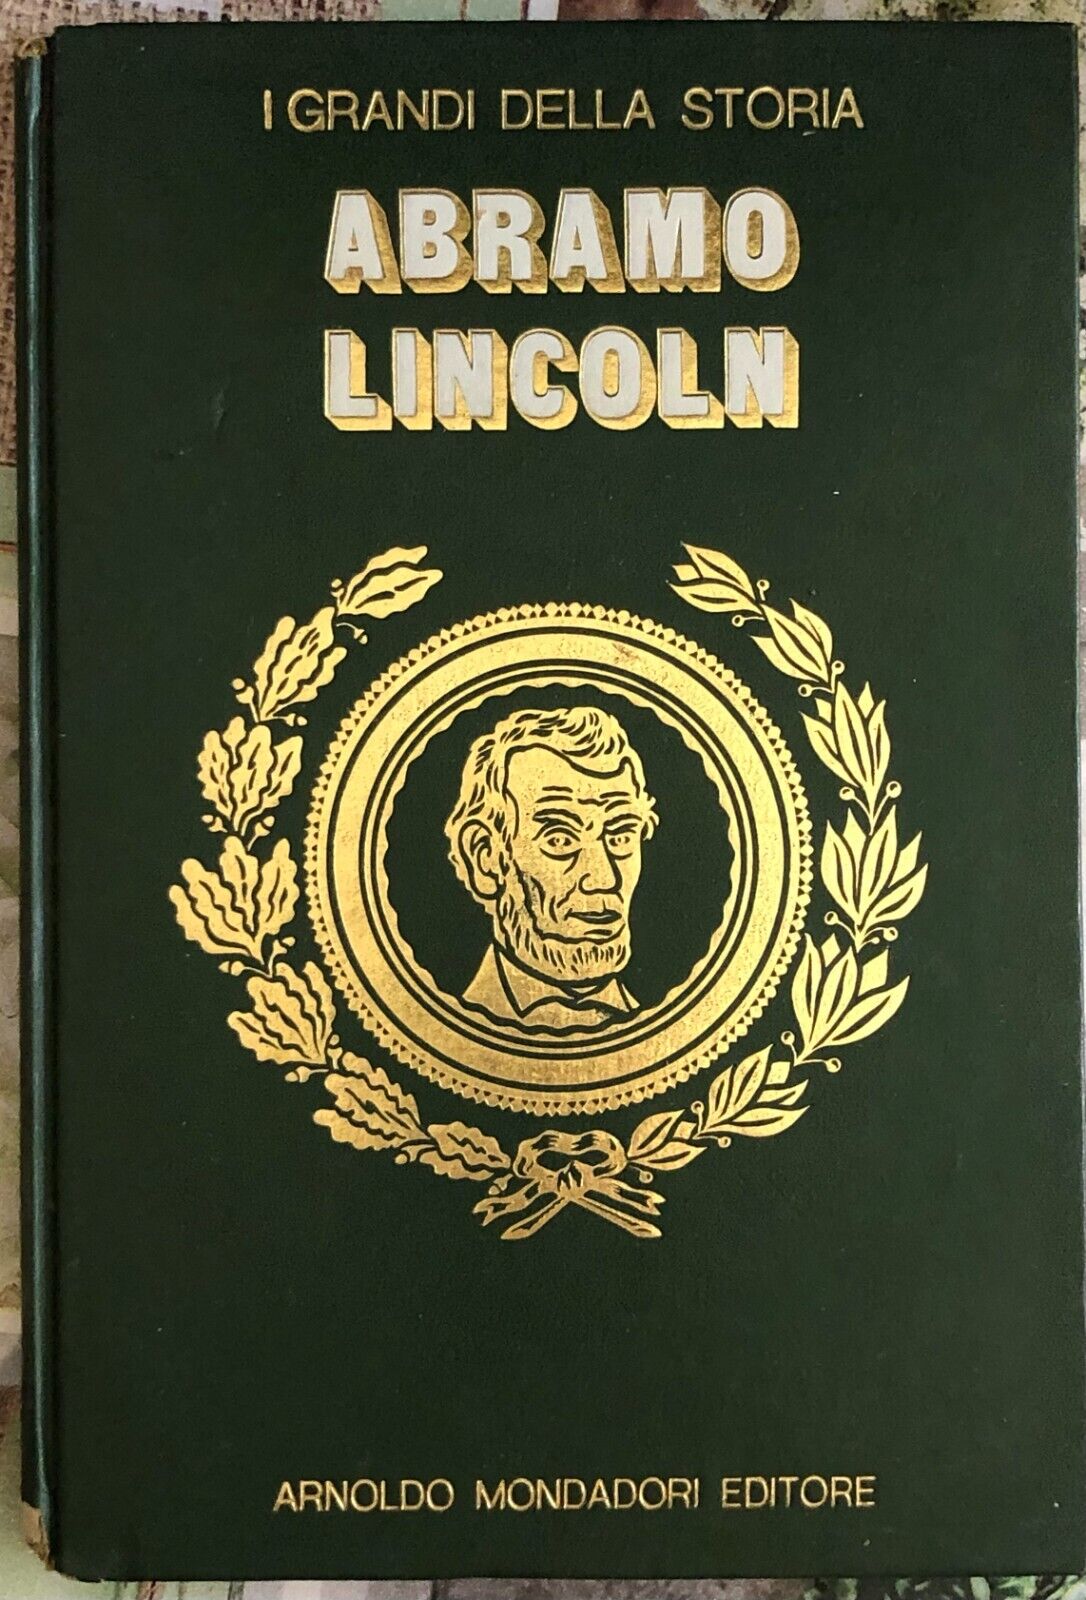 I grandi della storia n. 20 - Abramo Lincoln di Aa.vv.,  1971,  Arnoldo Mondador